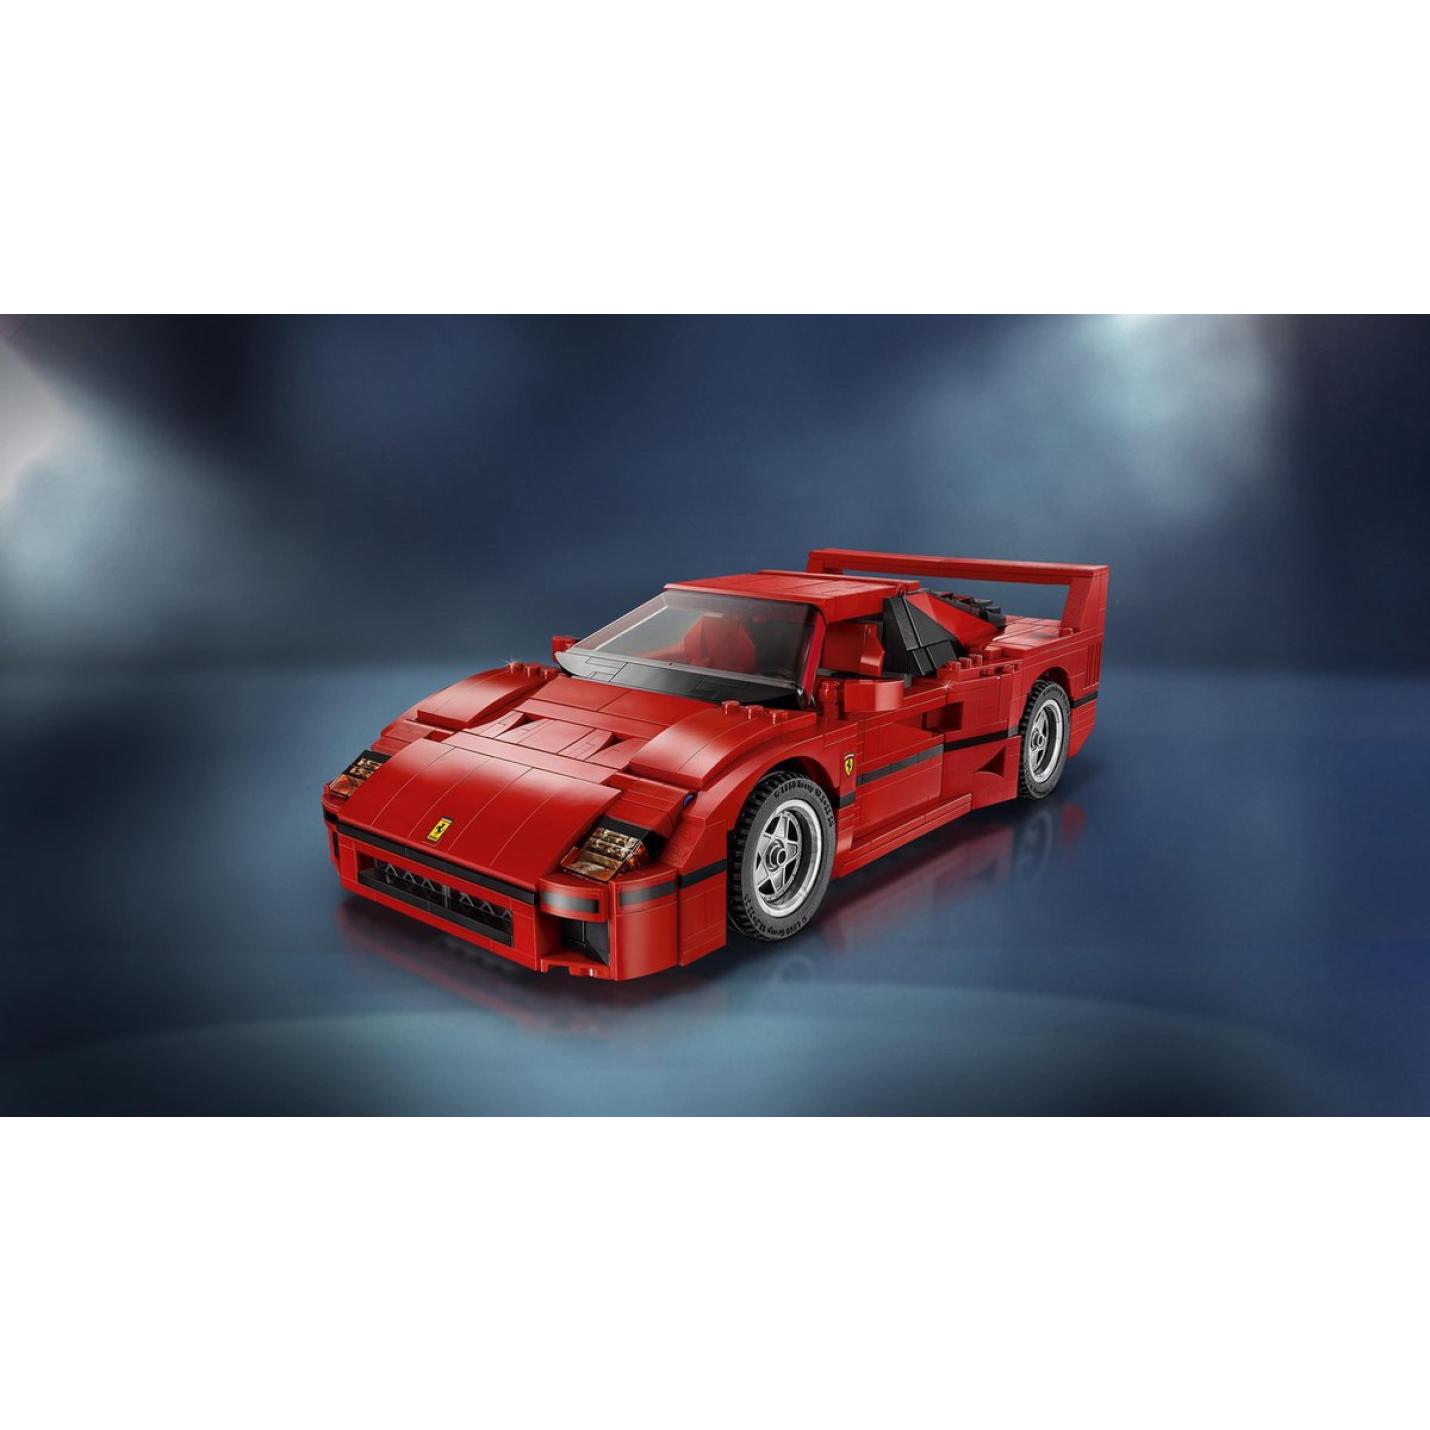 LEGO Creator Expert Ferrari F40 - 10248 4